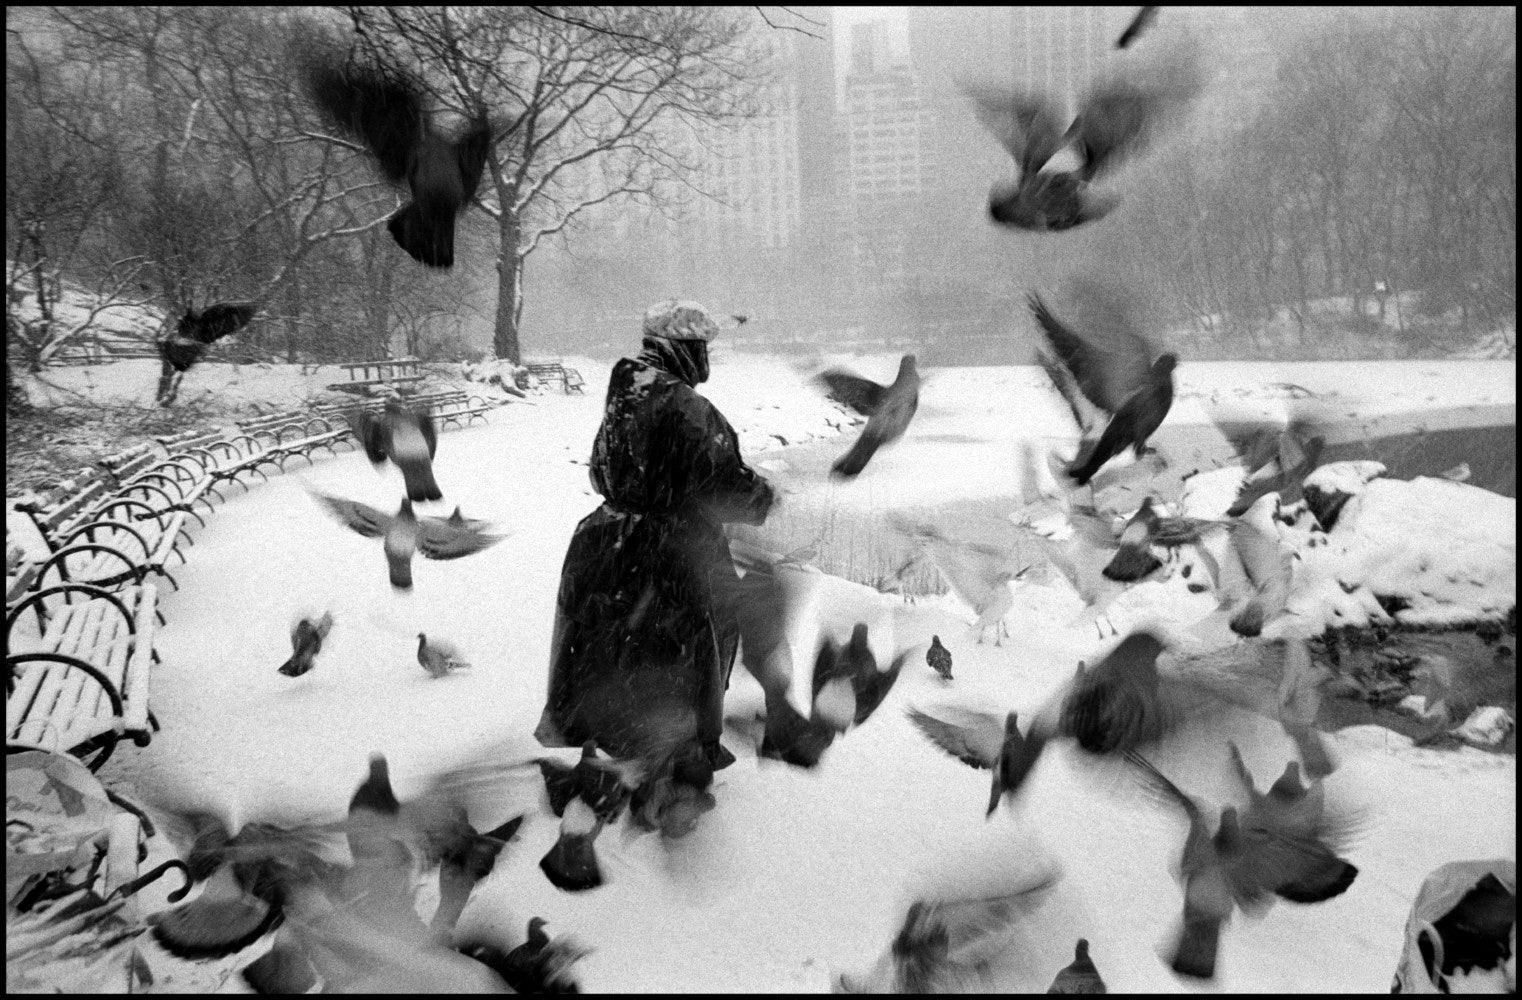 Bruce Davidson — Central Park